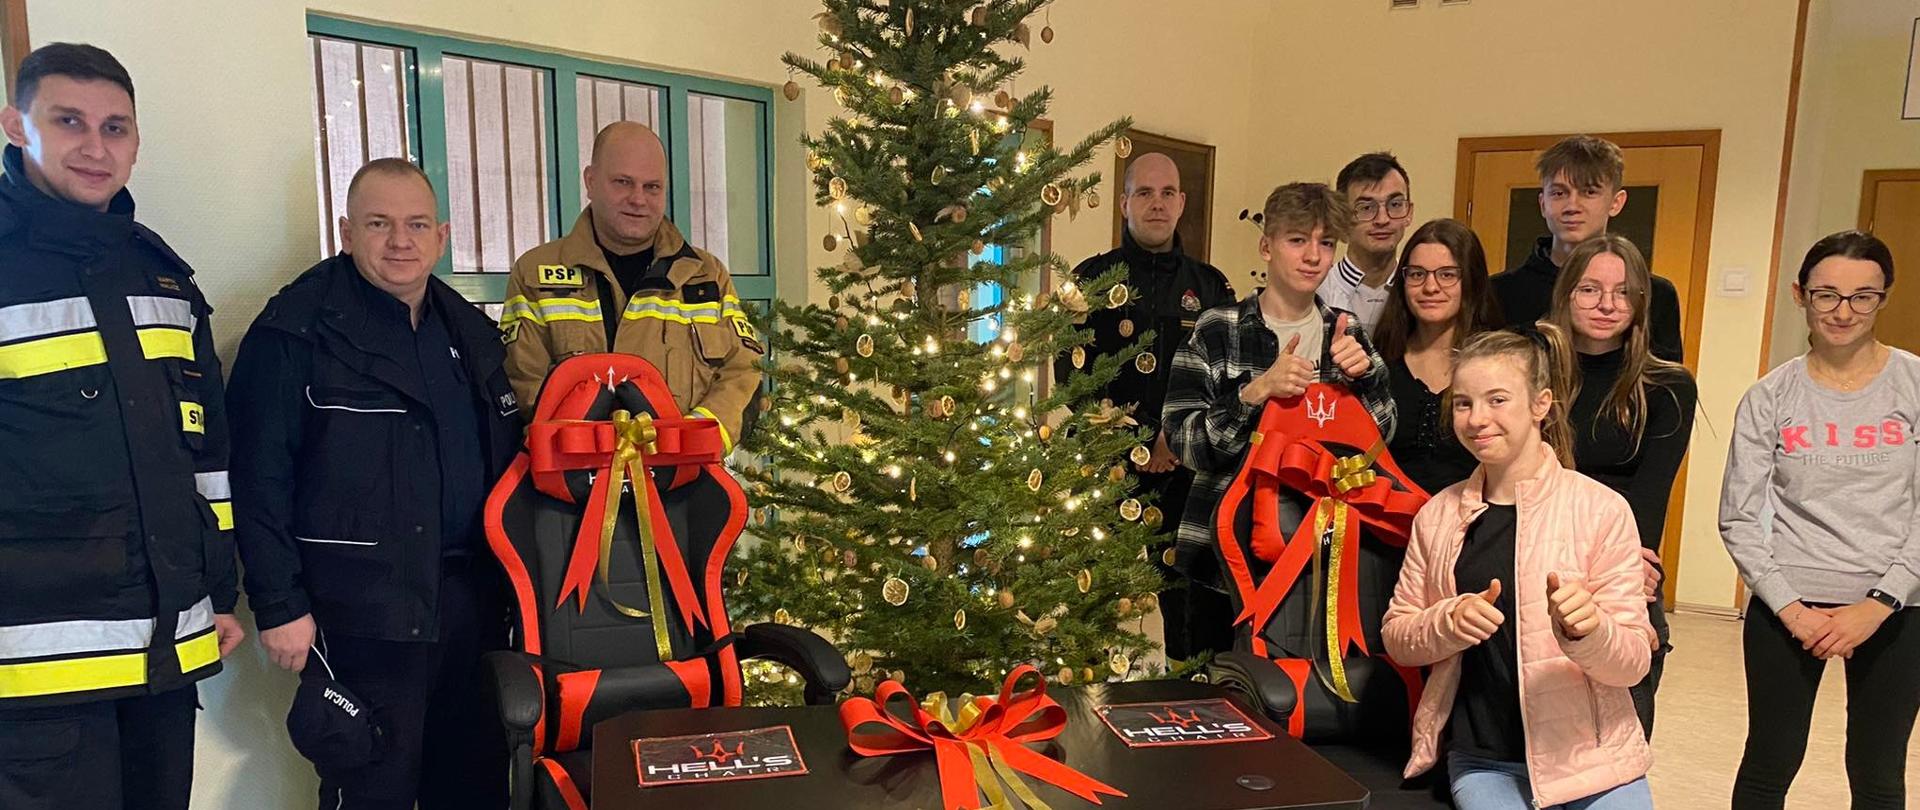 Na zdjęciu strażacy, policjant i wychowankowie placówki w Chrzypsku stoją przy choinki, przed która znajdują się dwa biurka i dwa fotele gaminkowe - prezenty dla placówki w Chrzypsku.